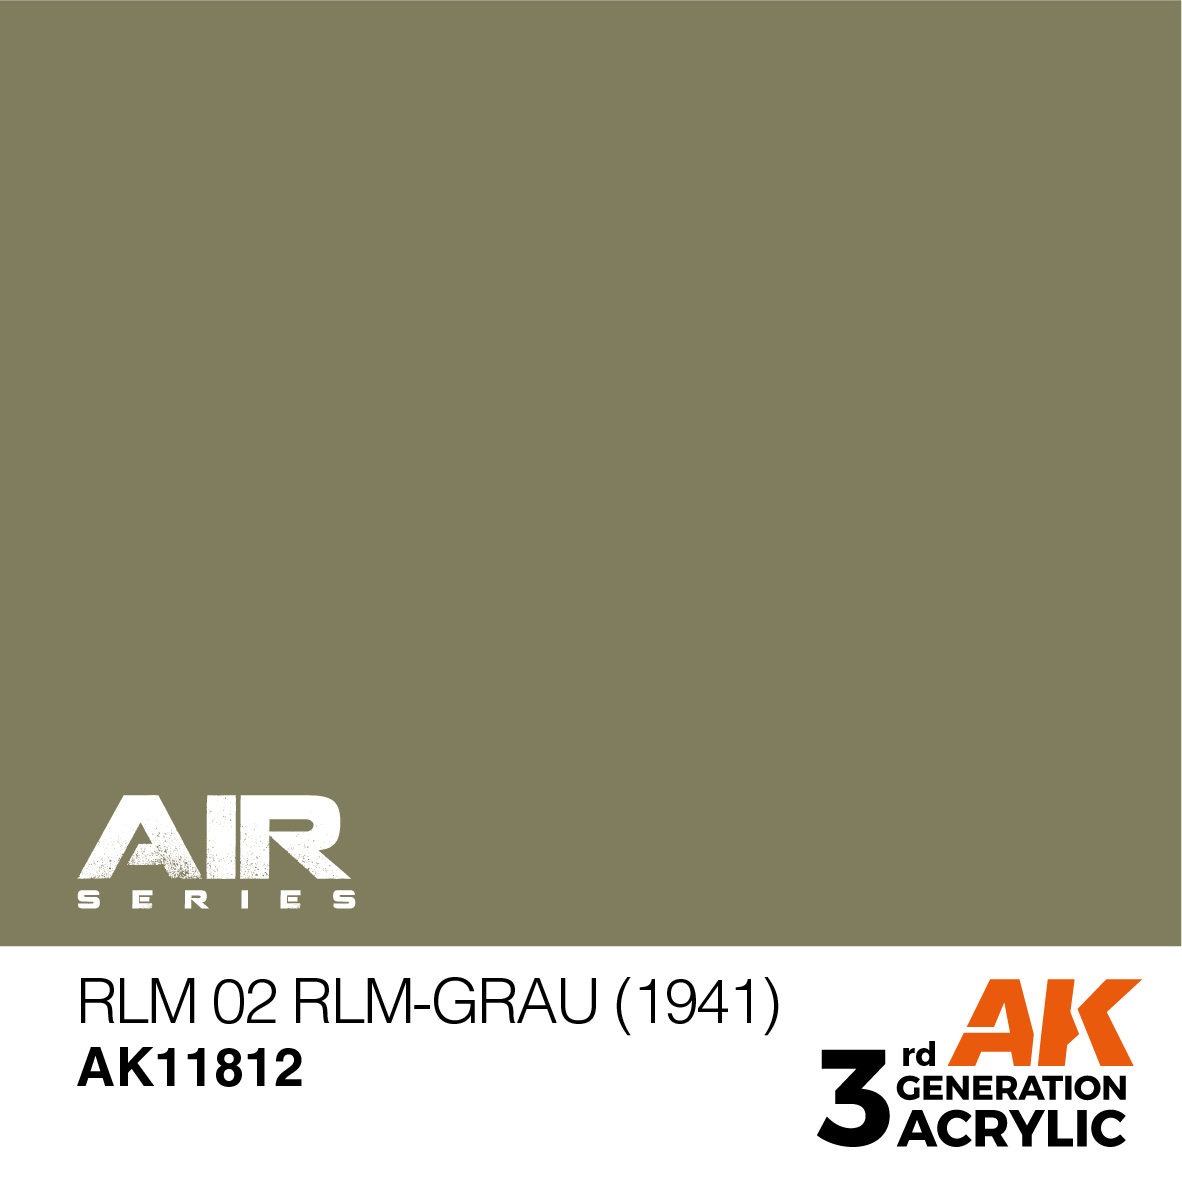 RLM 02 RLM-Grau (1941) – AIR